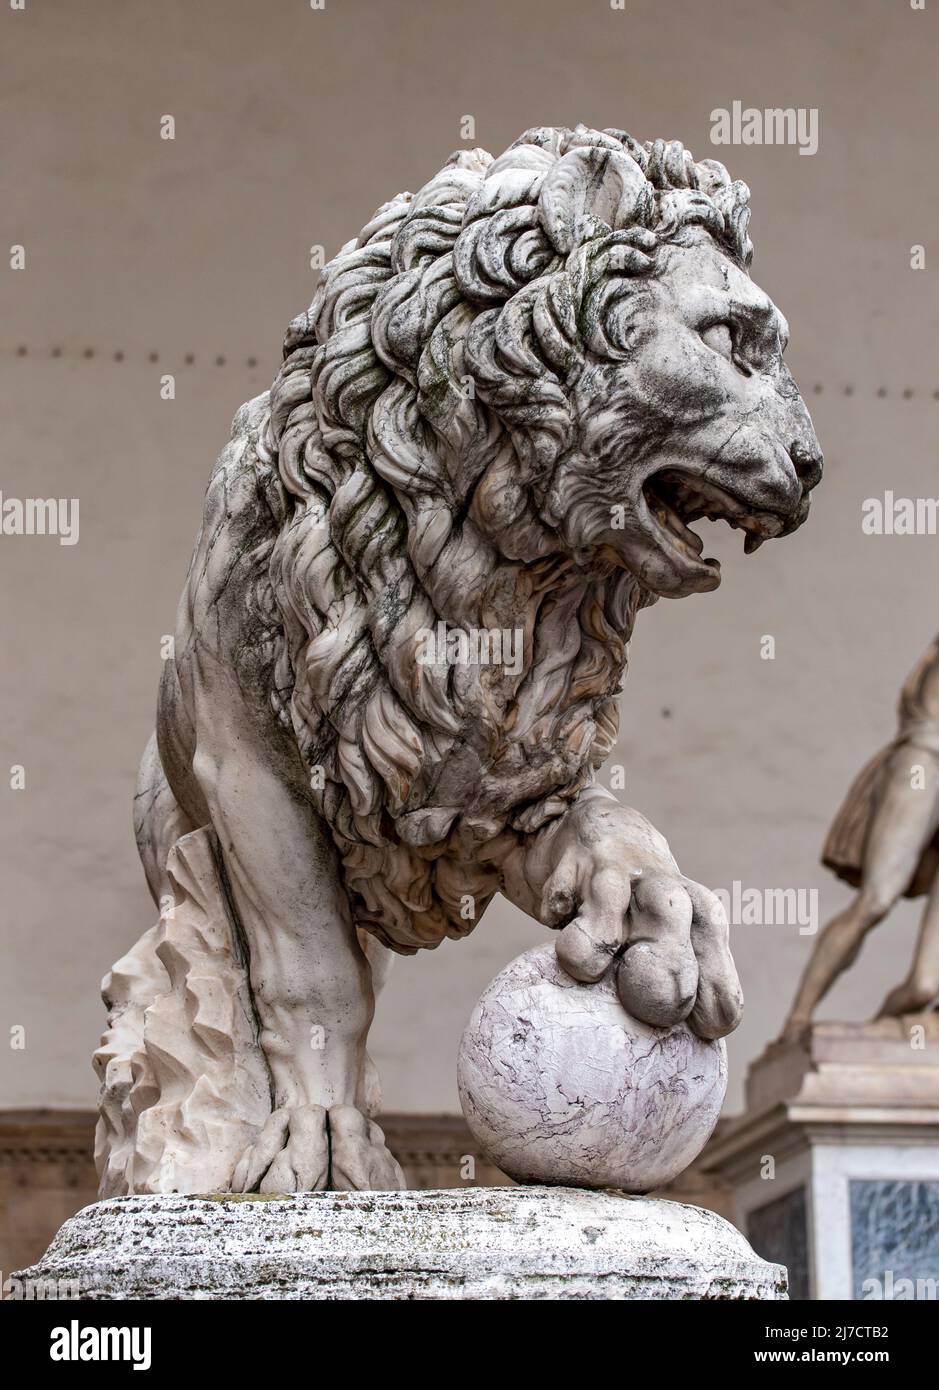 Medici lion statue, Loggia dei Lanzi, Piazza della Signoria, Florence, Italy Stock Photo